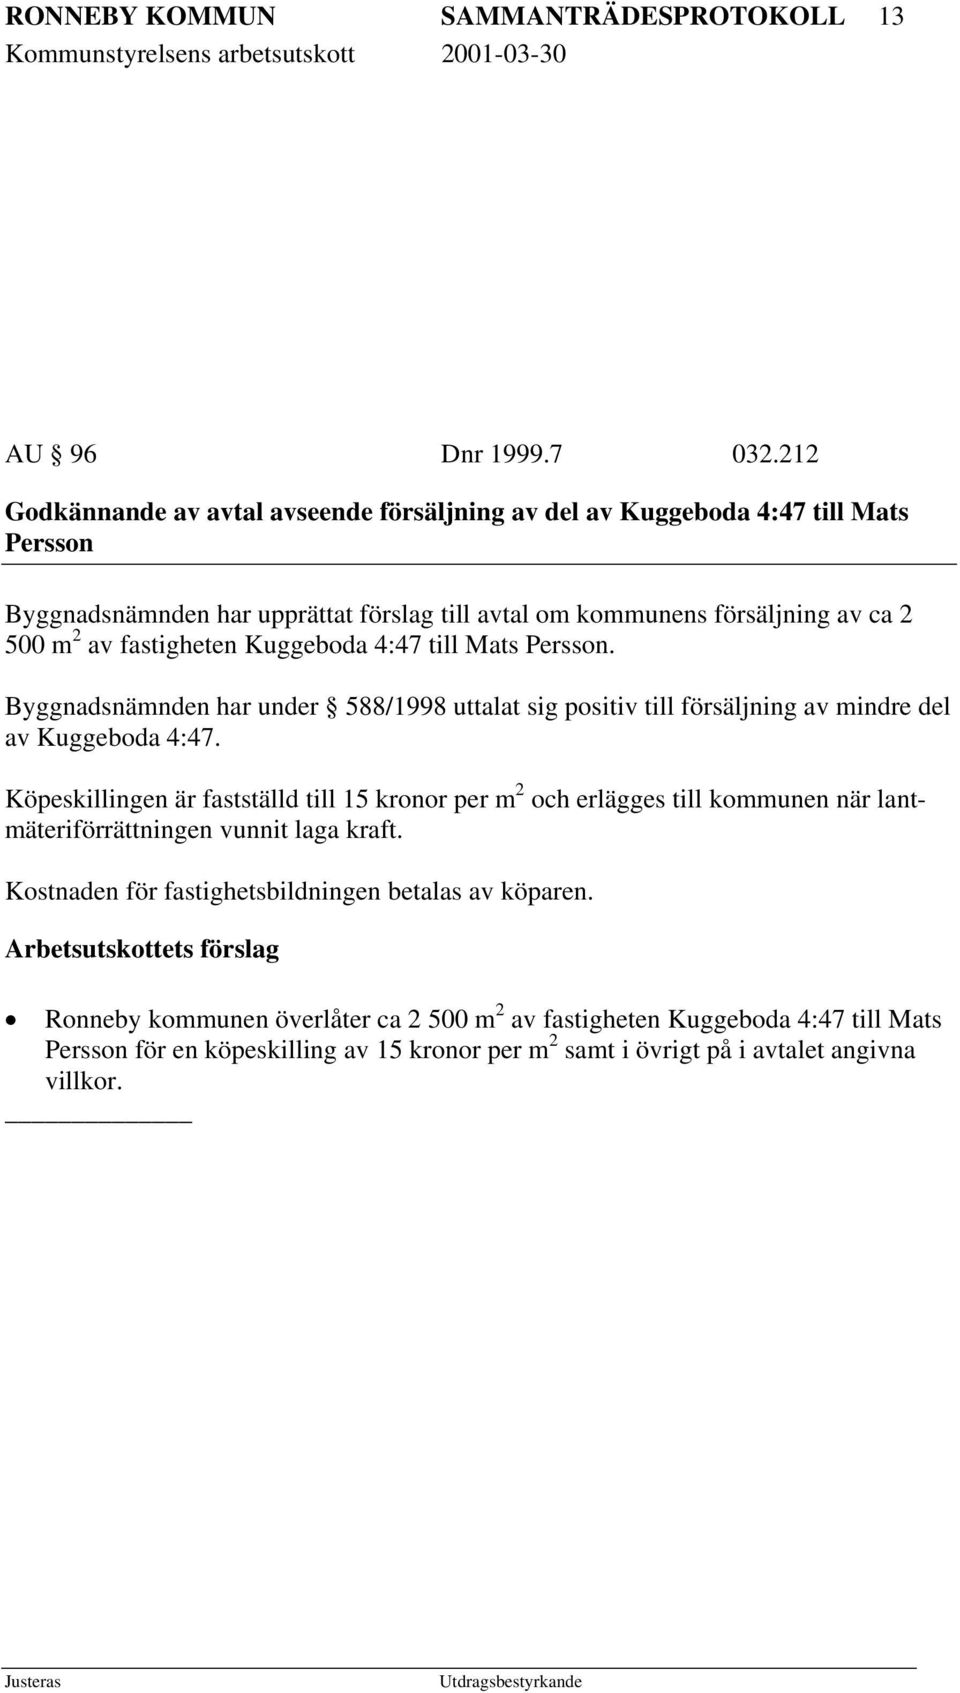 fastigheten Kuggeboda 4:47 till Mats Persson. Byggnadsnämnden har under 588/1998 uttalat sig positiv till försäljning av mindre del av Kuggeboda 4:47.